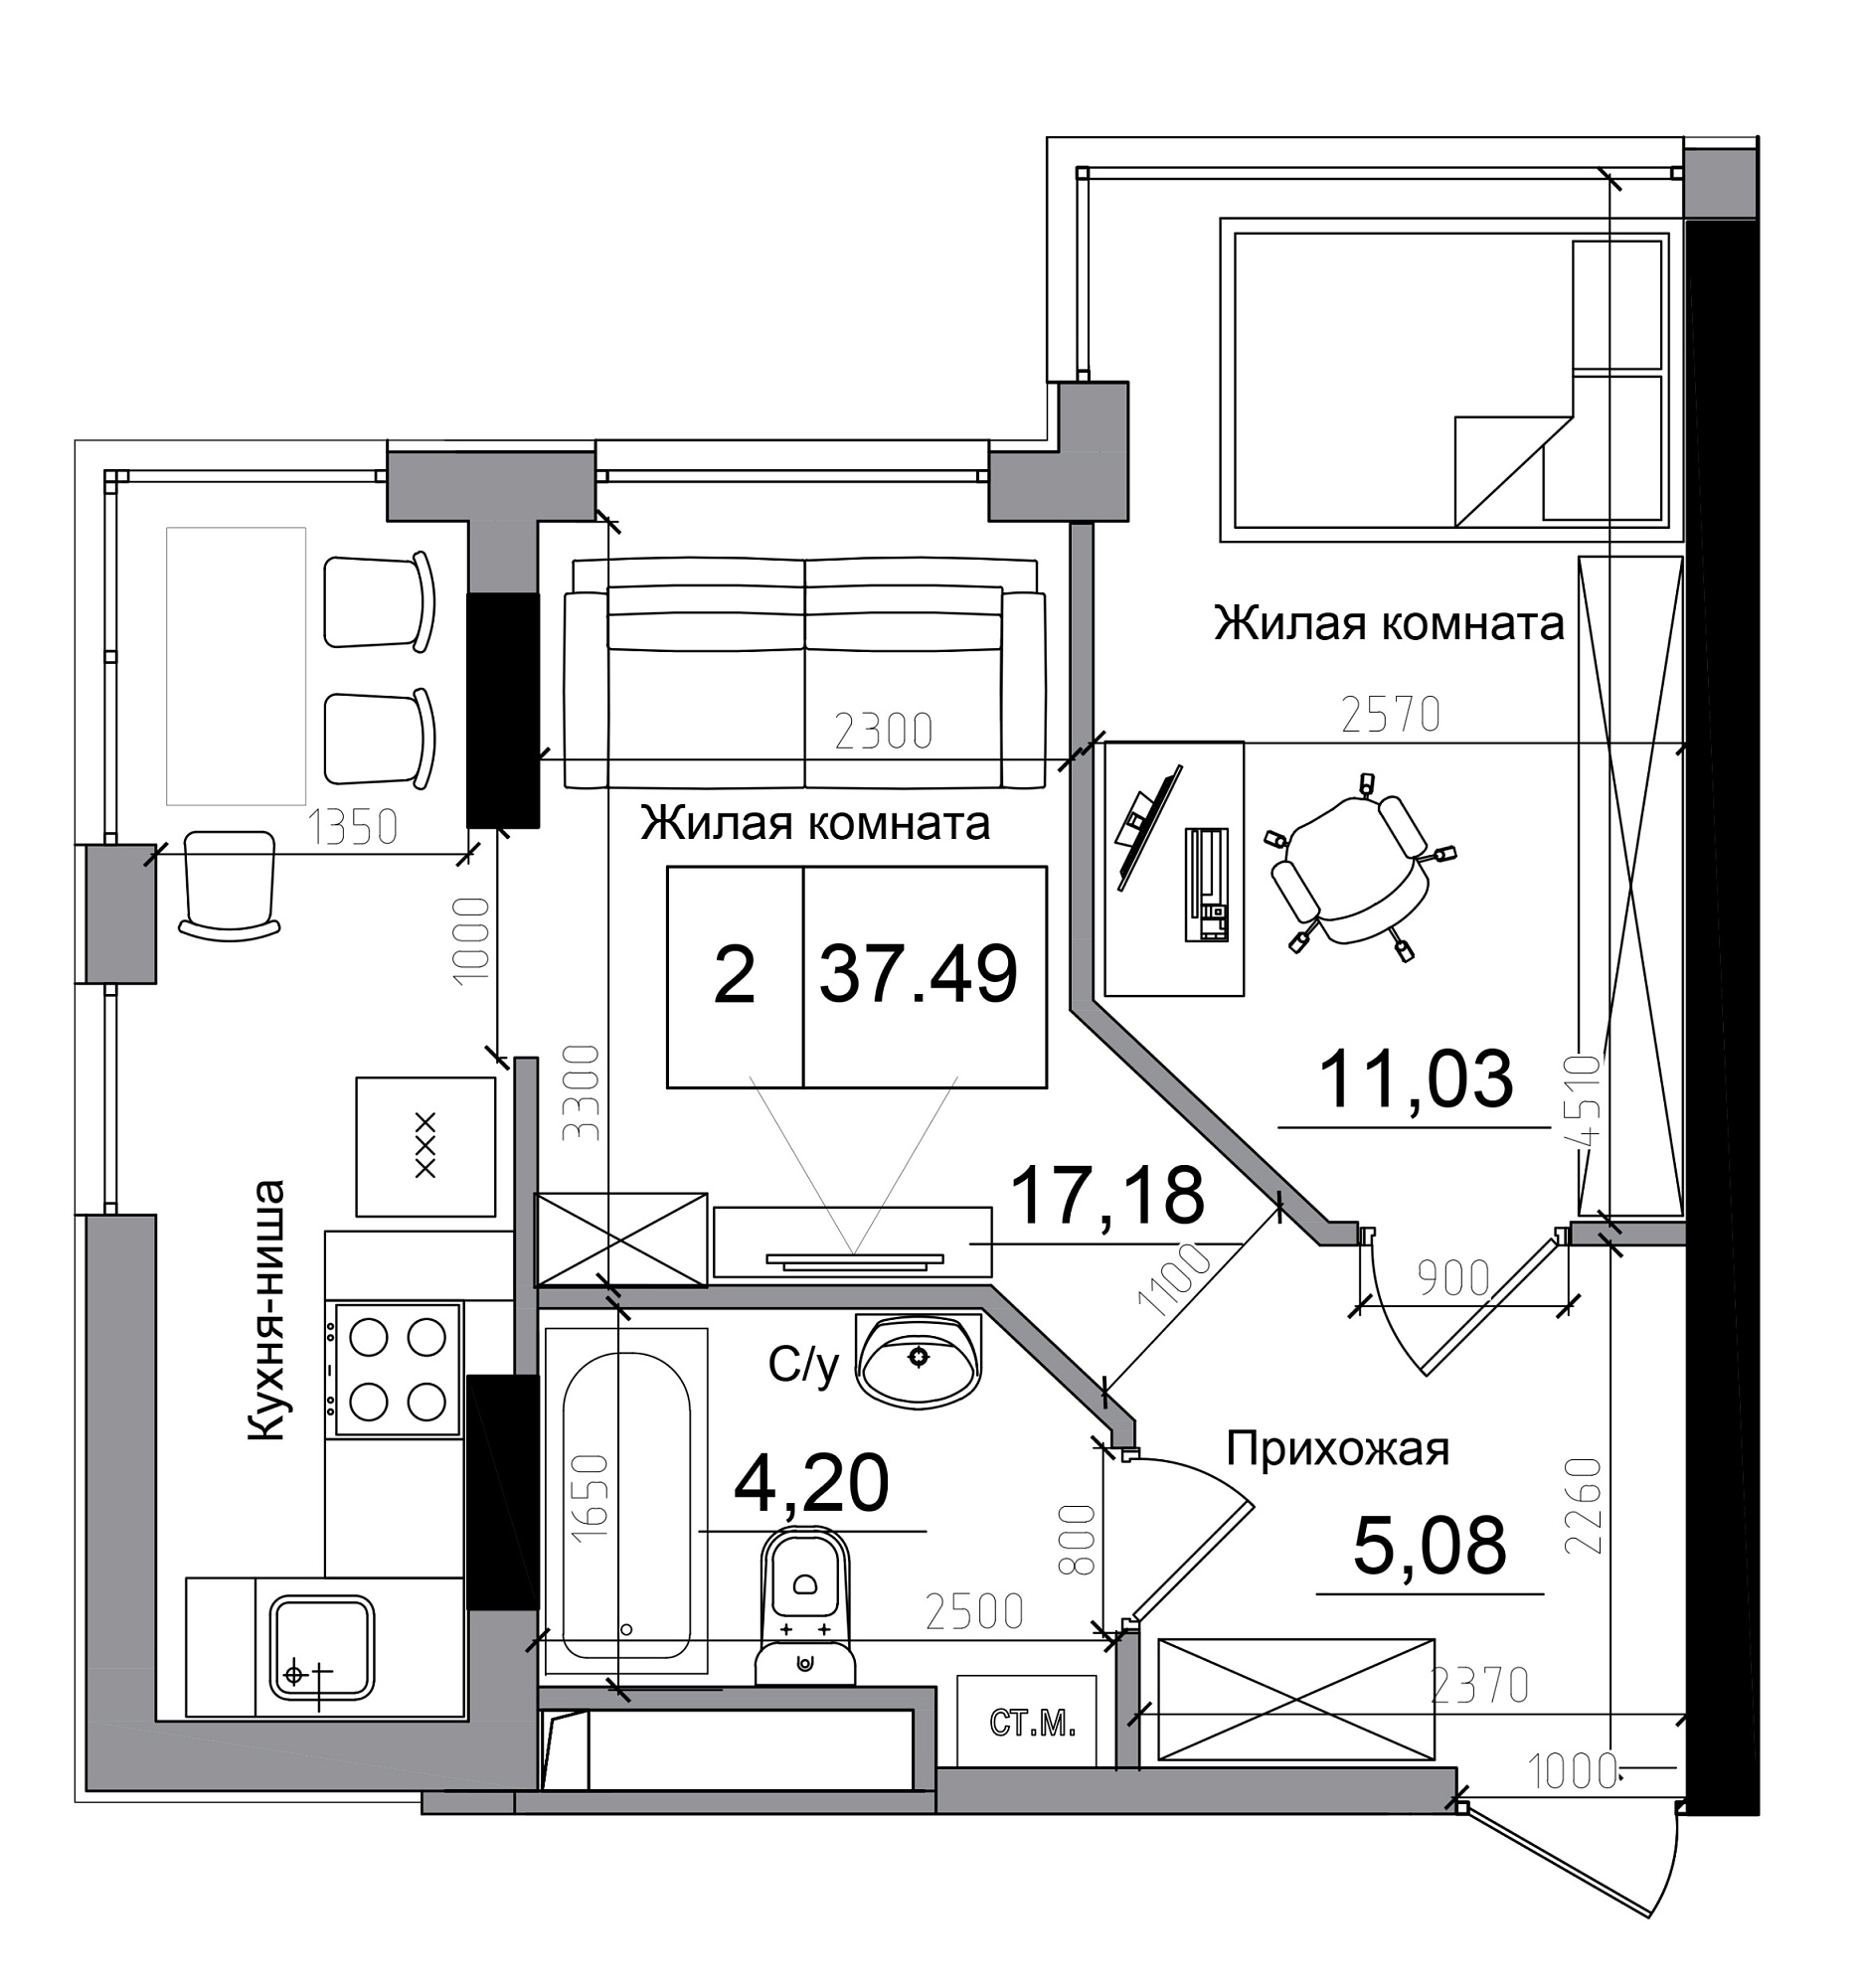 Планування 1-к квартира площею 37.49м2, AB-11-11/00005.